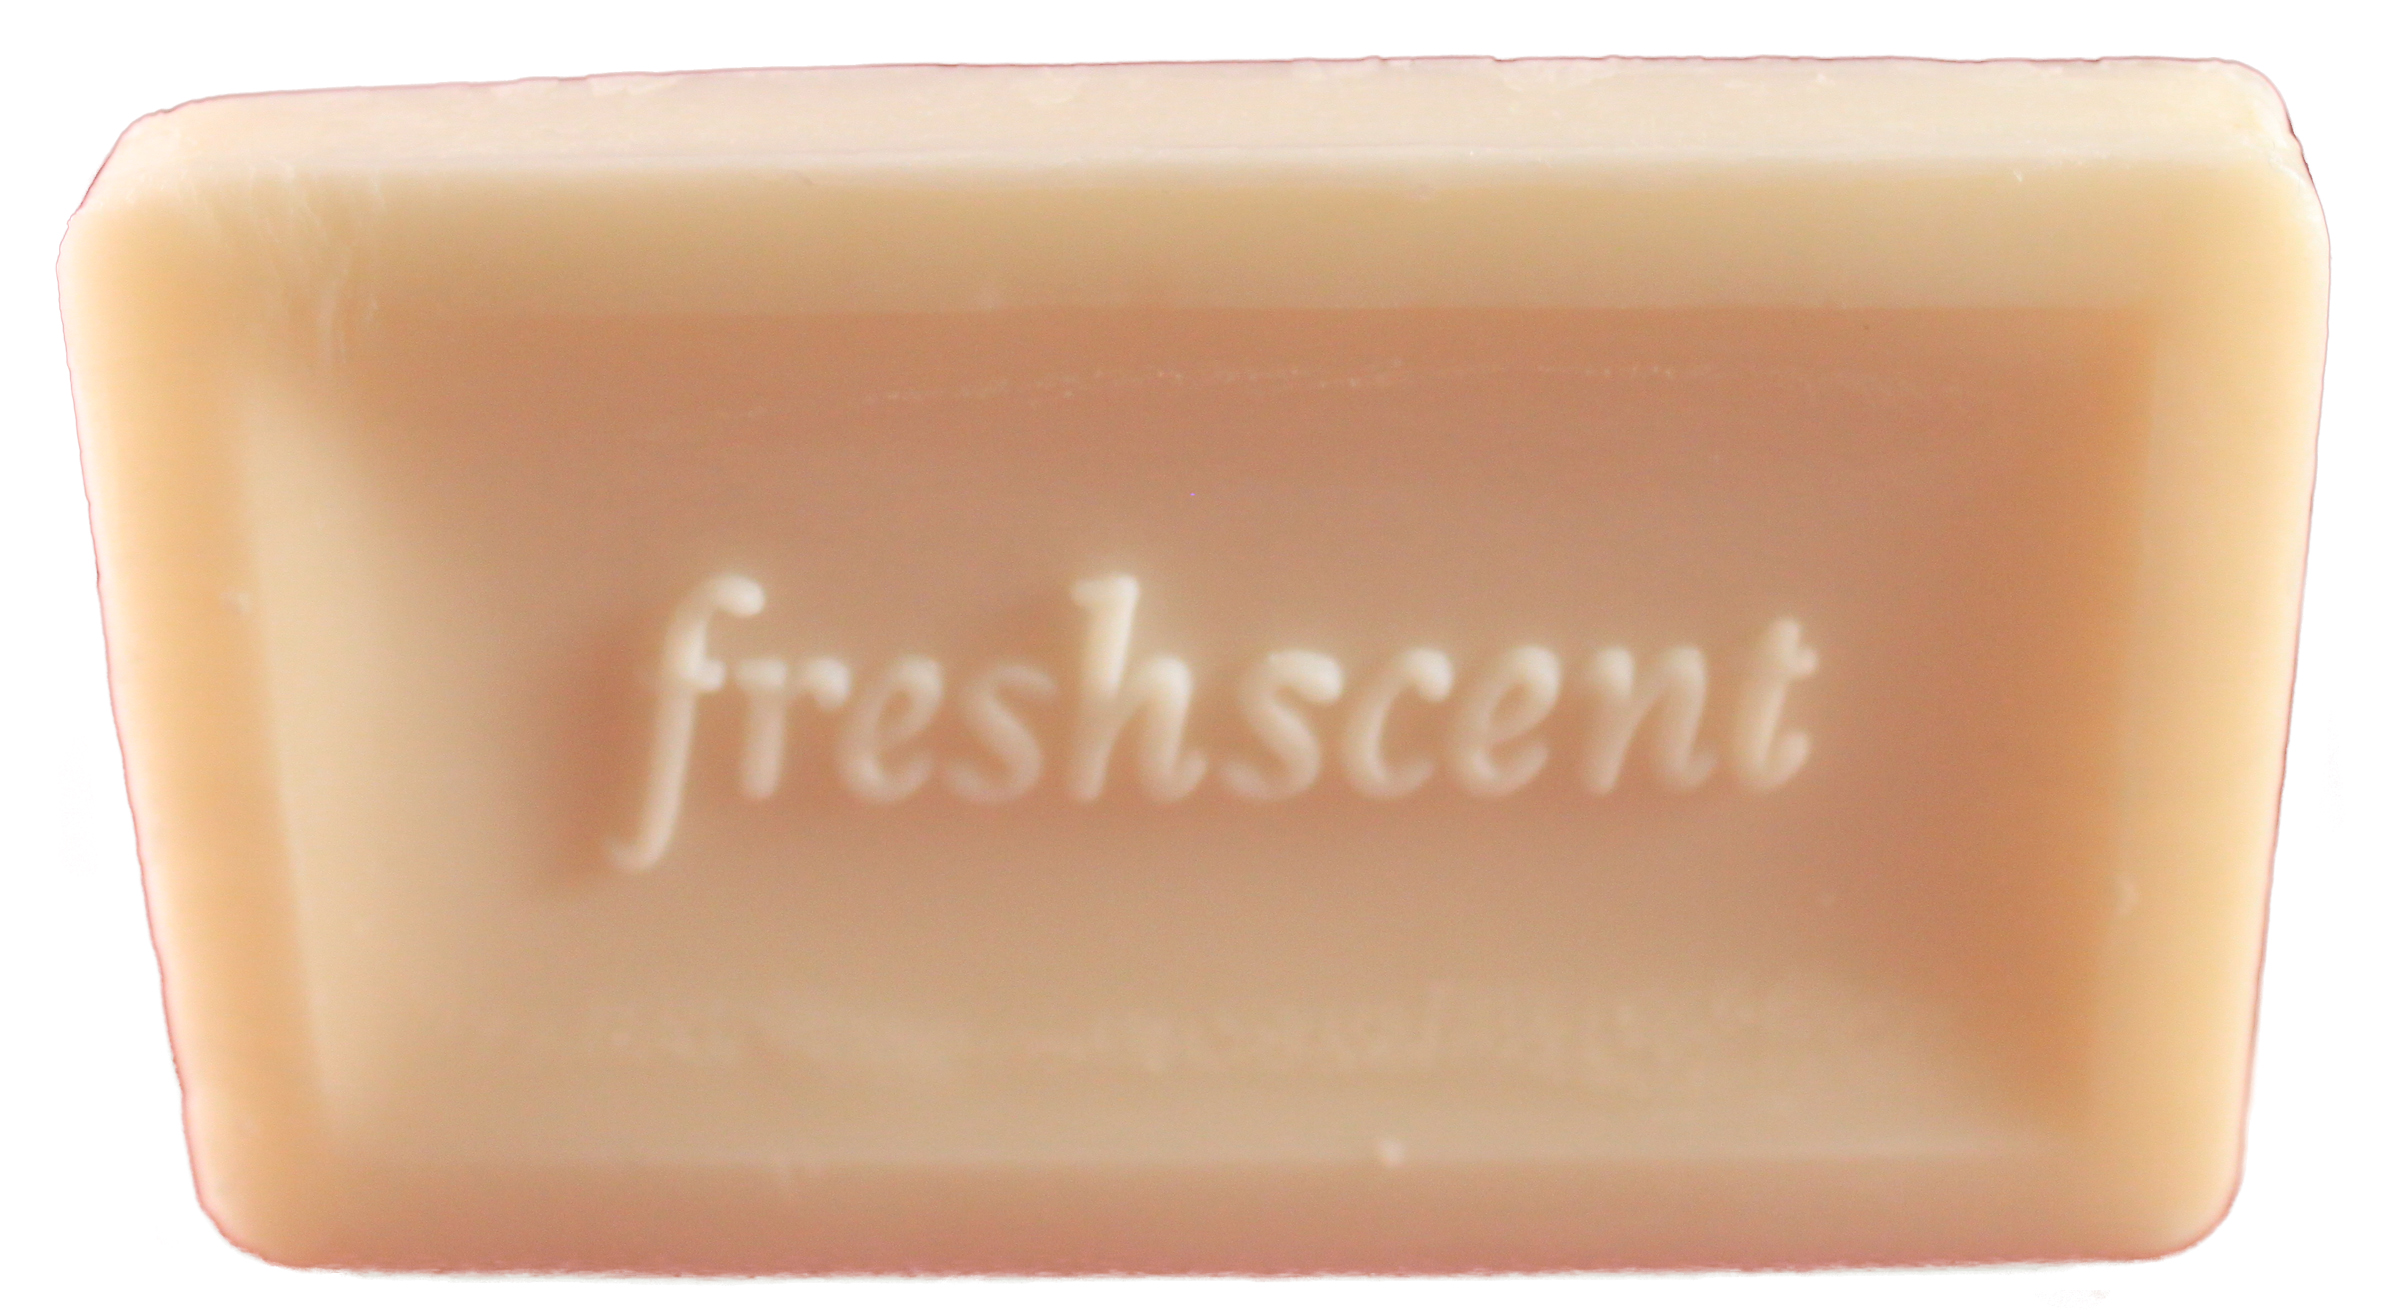 Freshscent #1.5 (1 oz.) Unwrapped Soap